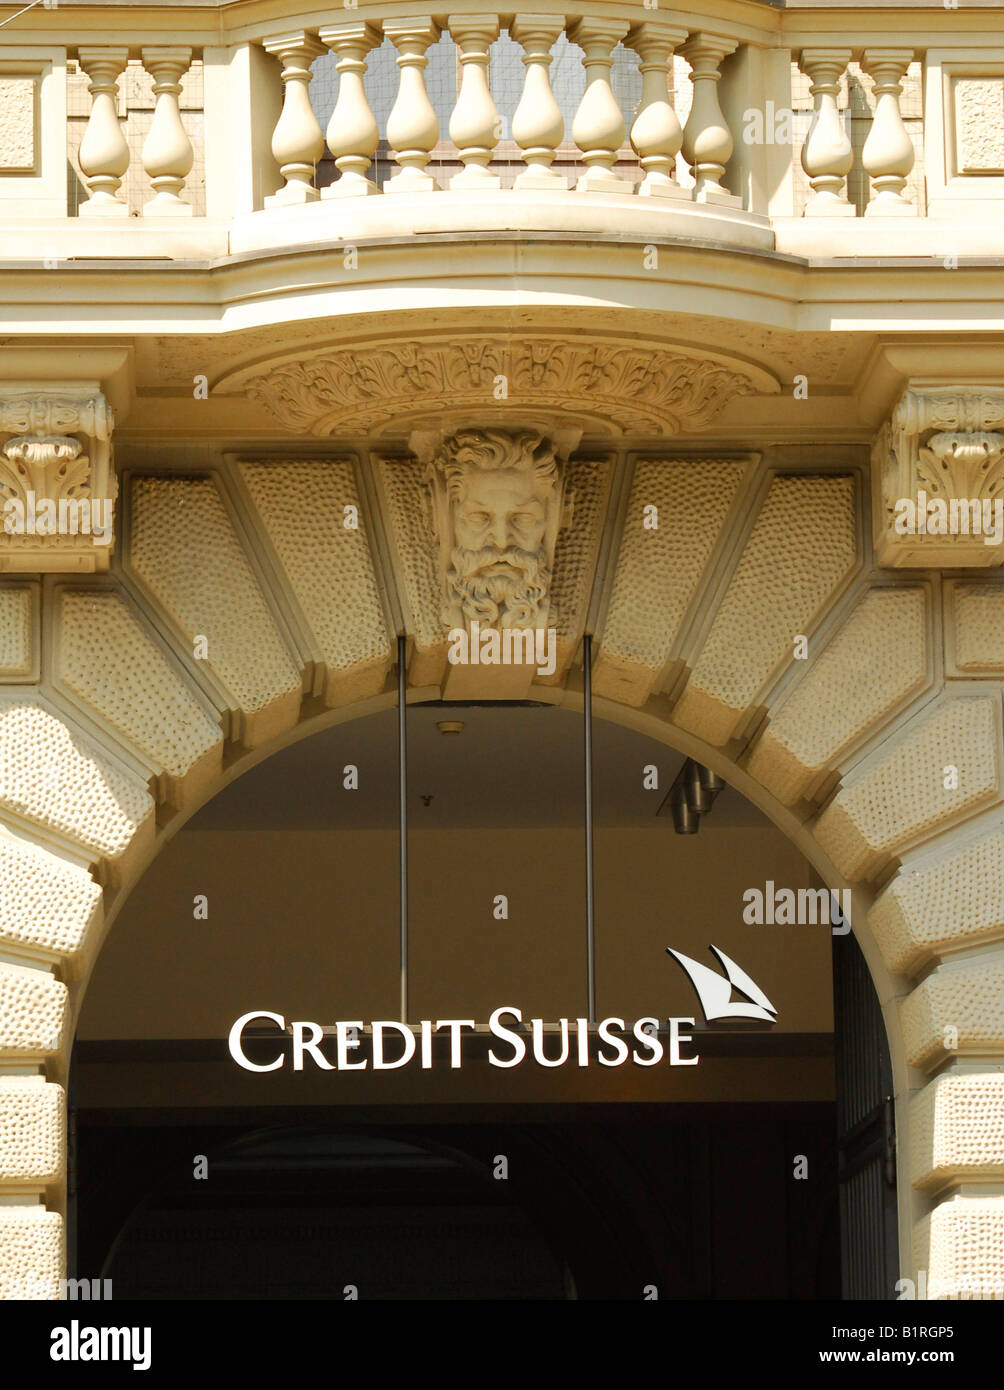 Credit Suisse, Zurich, Switzerland, Europe Stock Photo